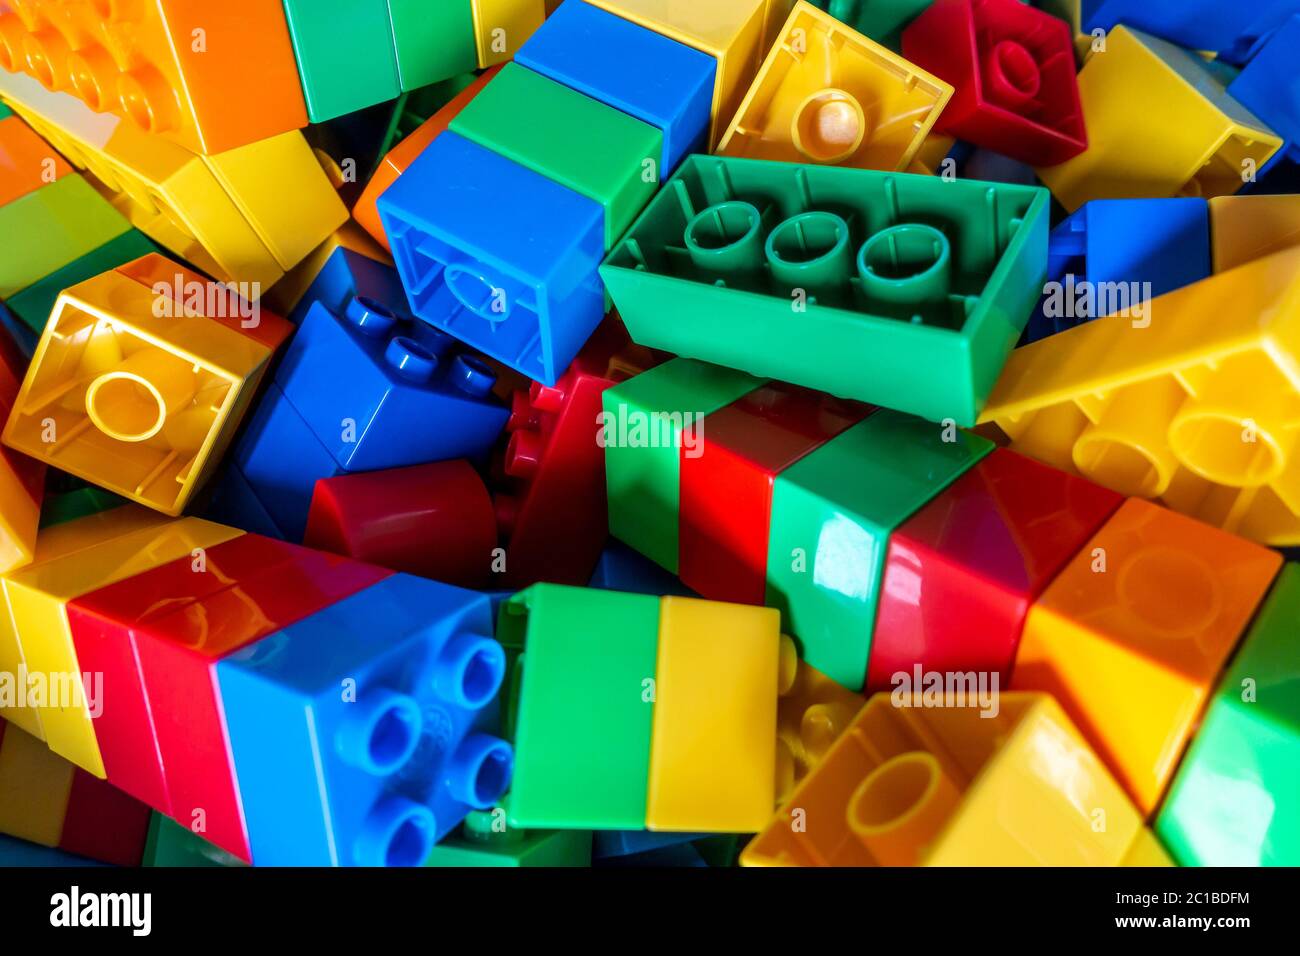 Bunte Kunststoff-Baustein Spielzeug-Set, wie von einem kleinen Kind verwendet, die Problemlösung und Kreativität fördert, Stockfoto